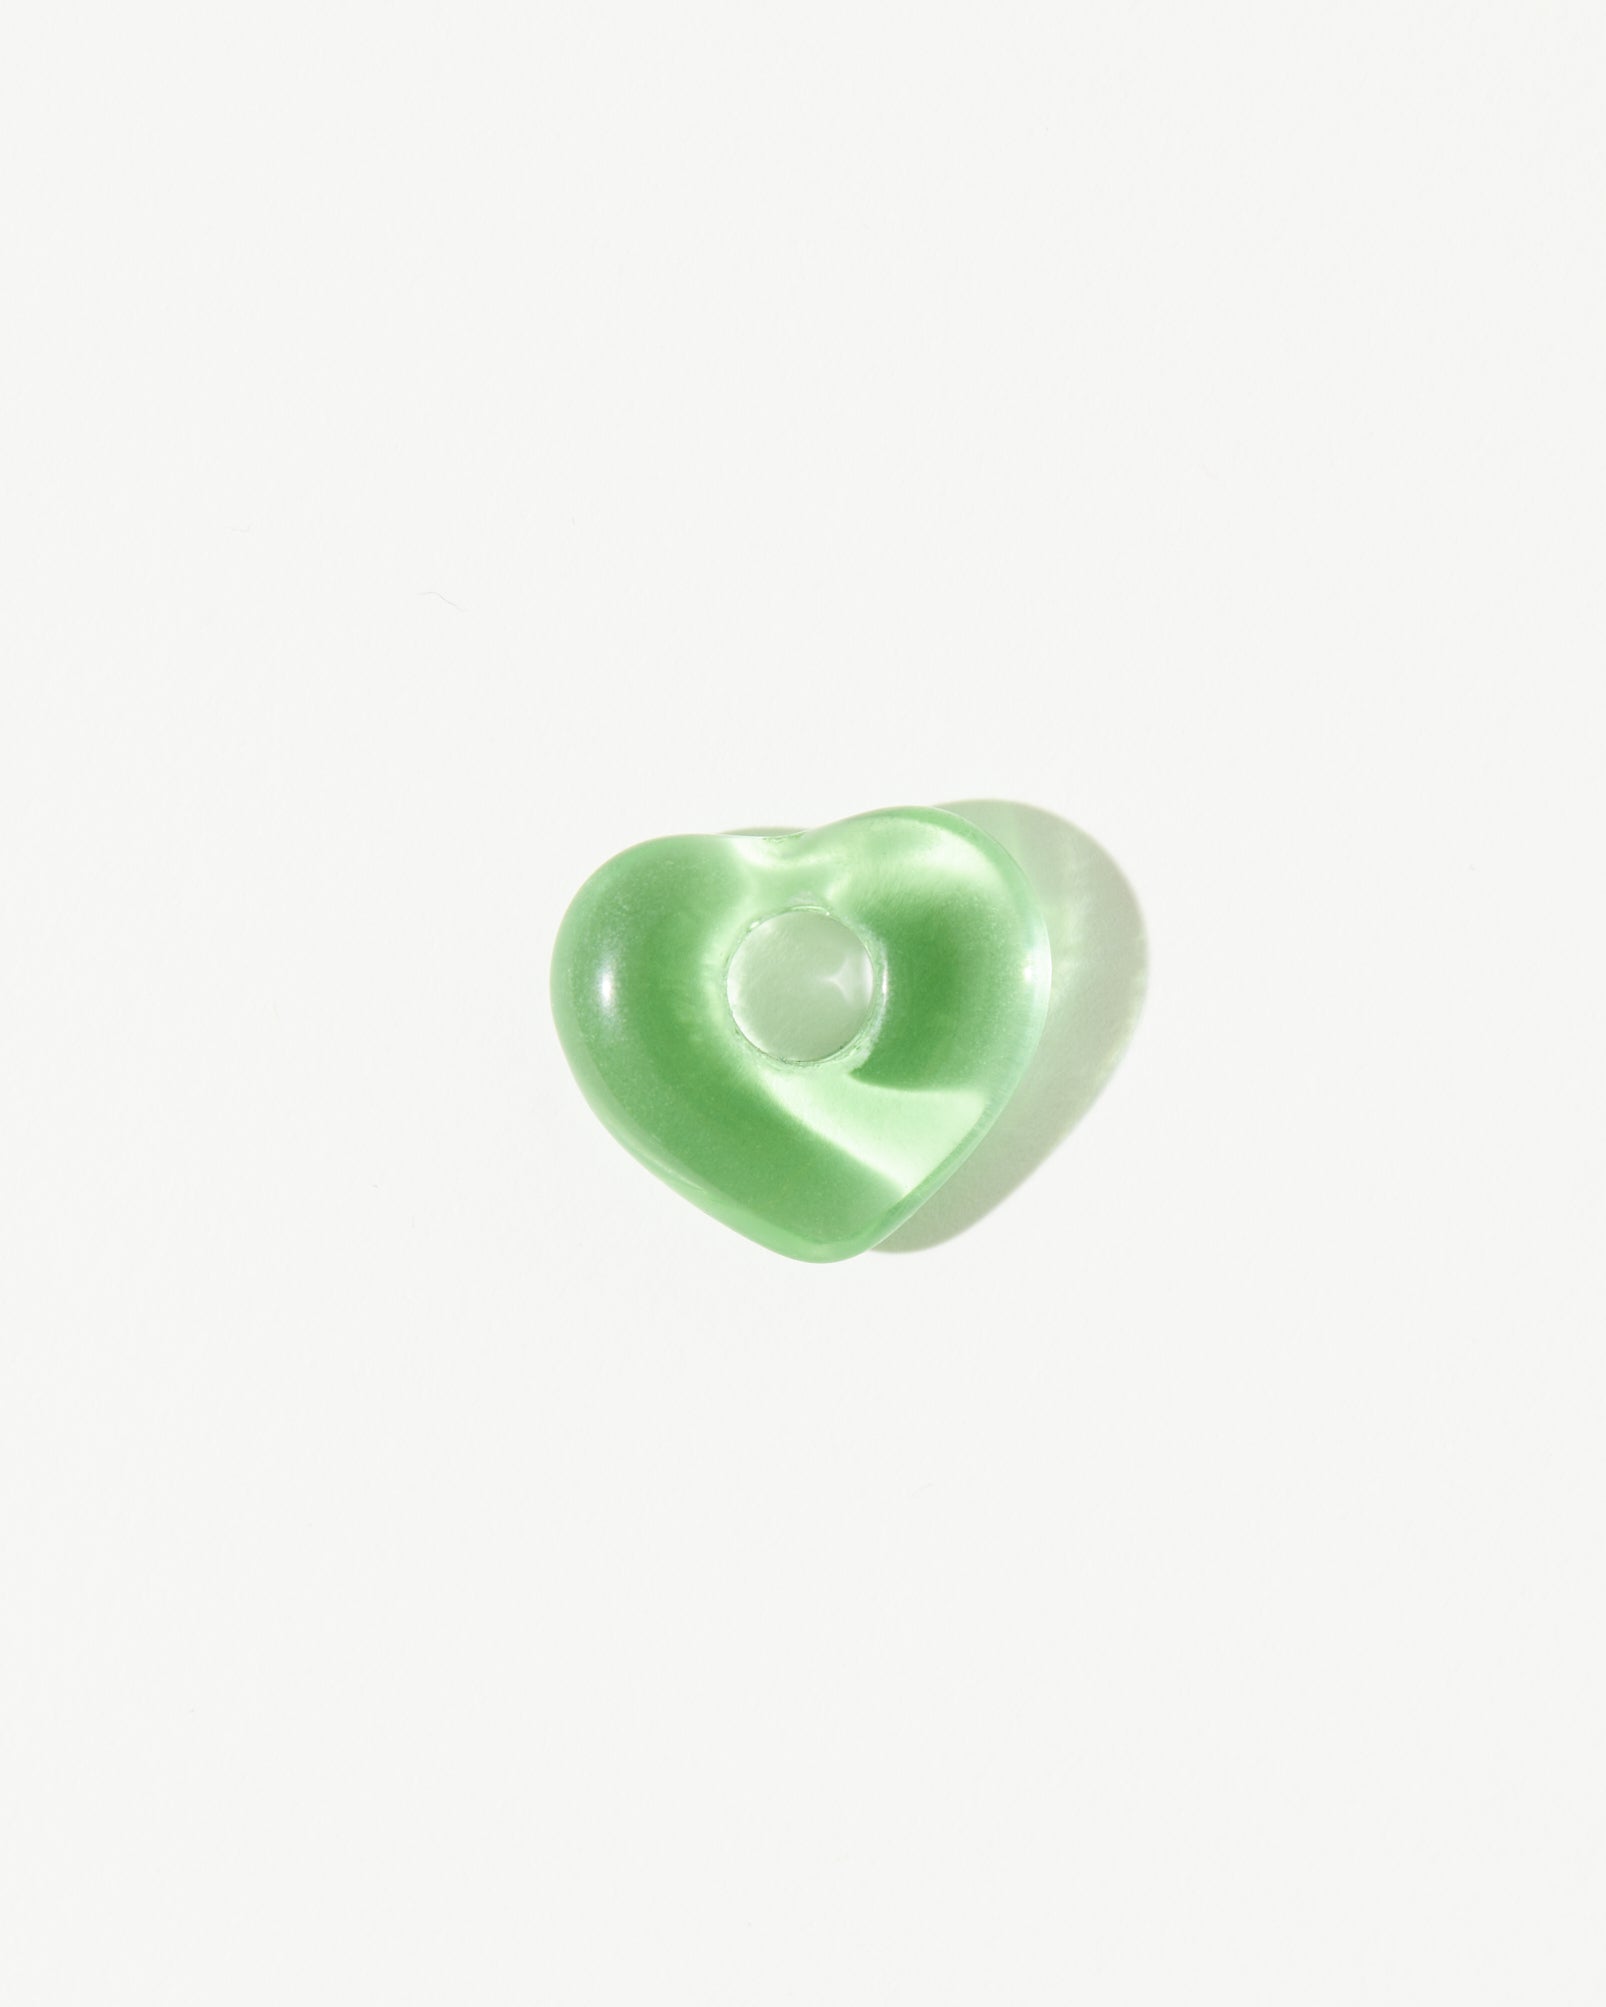 Juicy Wavy Hoops - Mint Heart